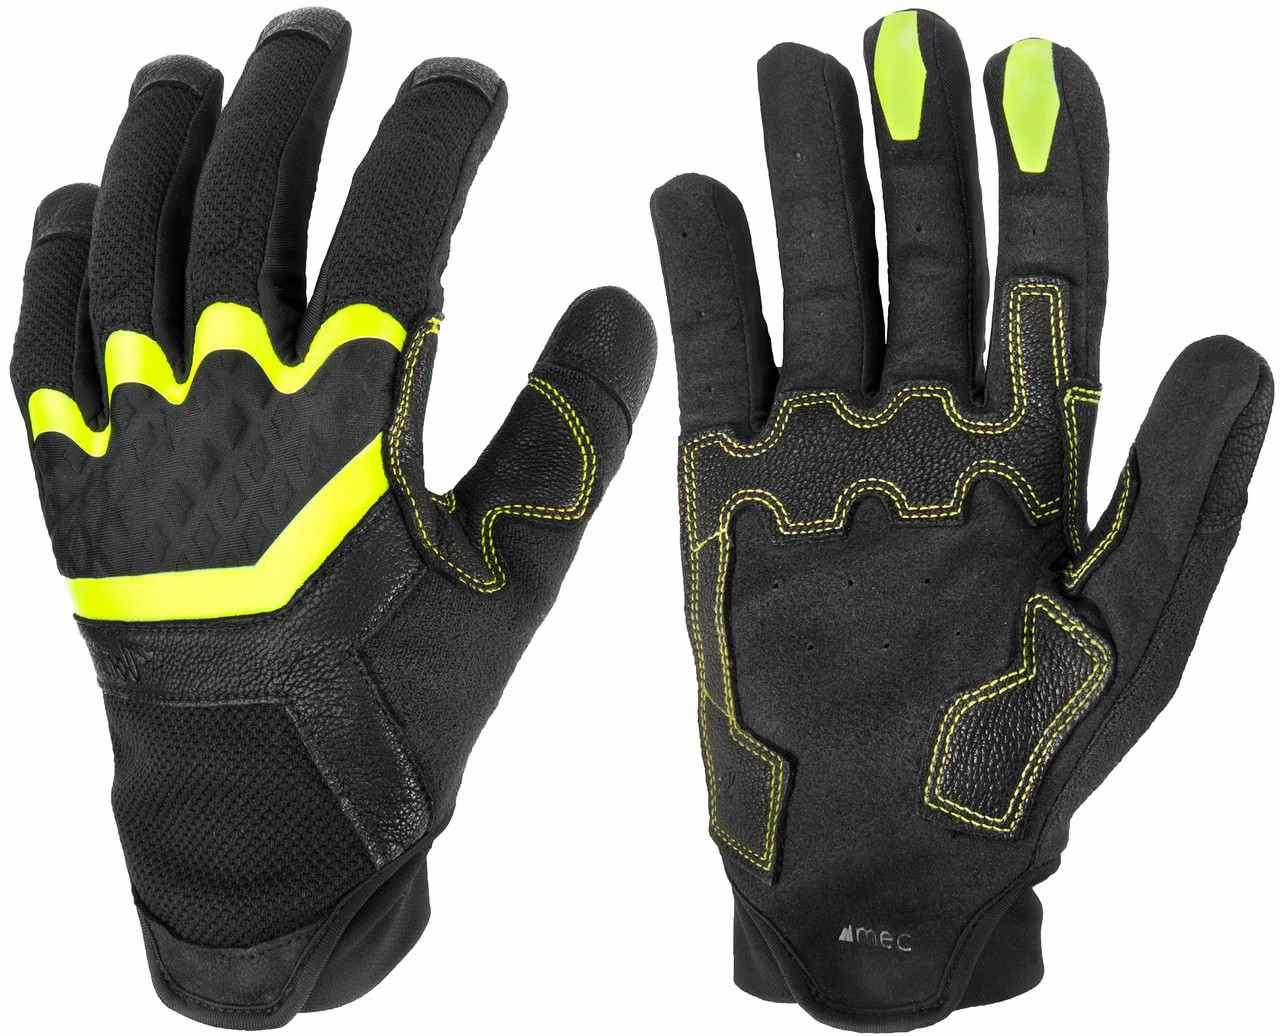 The Don Full Finger Gloves Black/Black